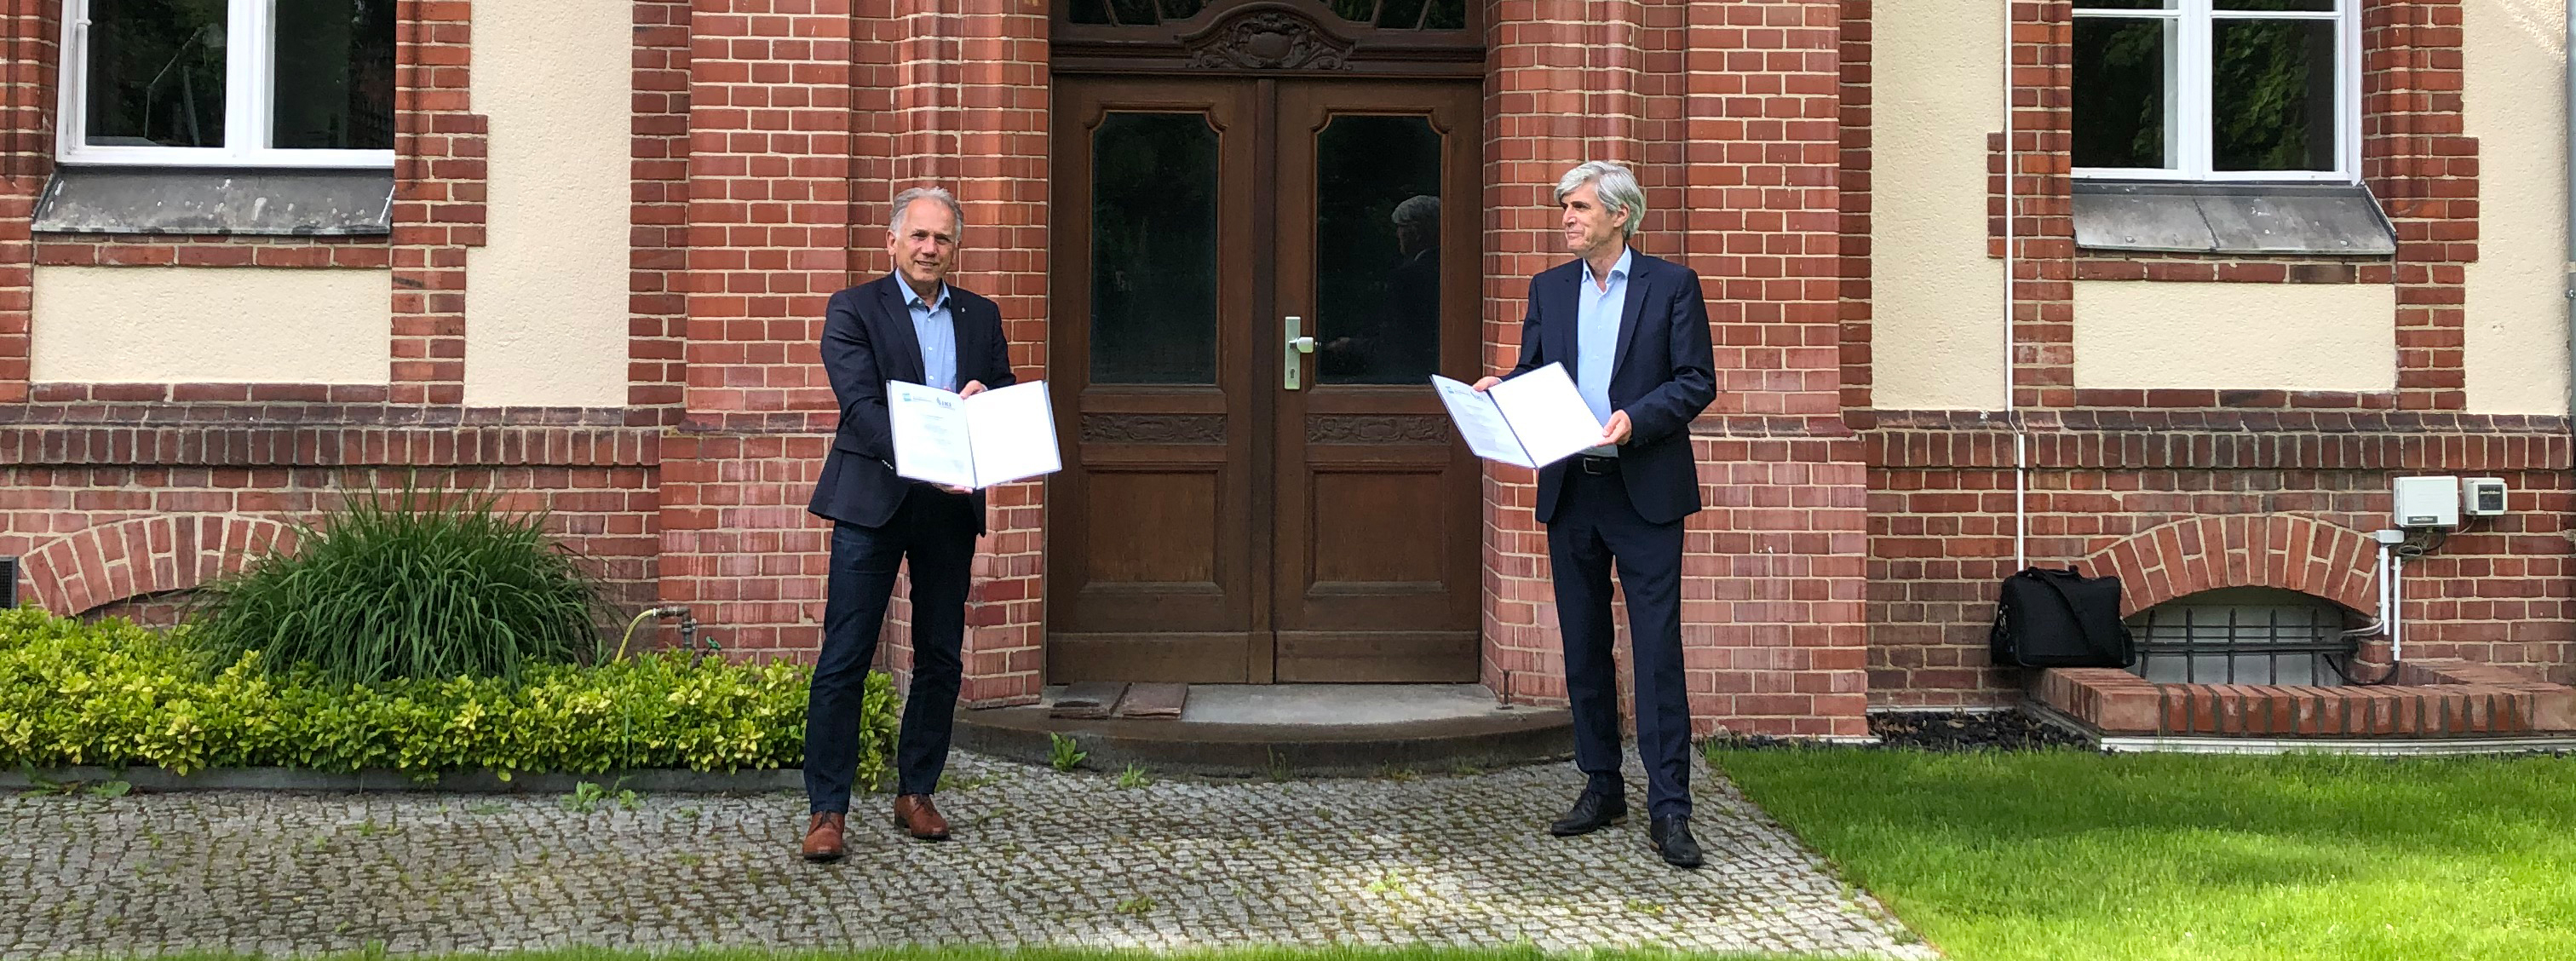 Der Leiter des ZALF Prof. Dr. Frank Ewert (r.) und der Präsident des JKI Prof. Dr. Frank Ordon präsentieren die unterzeichneten Kooperationsverträge vor dem JKI-Eingang in Berlin -Dahlem. © H.Beer/JKI